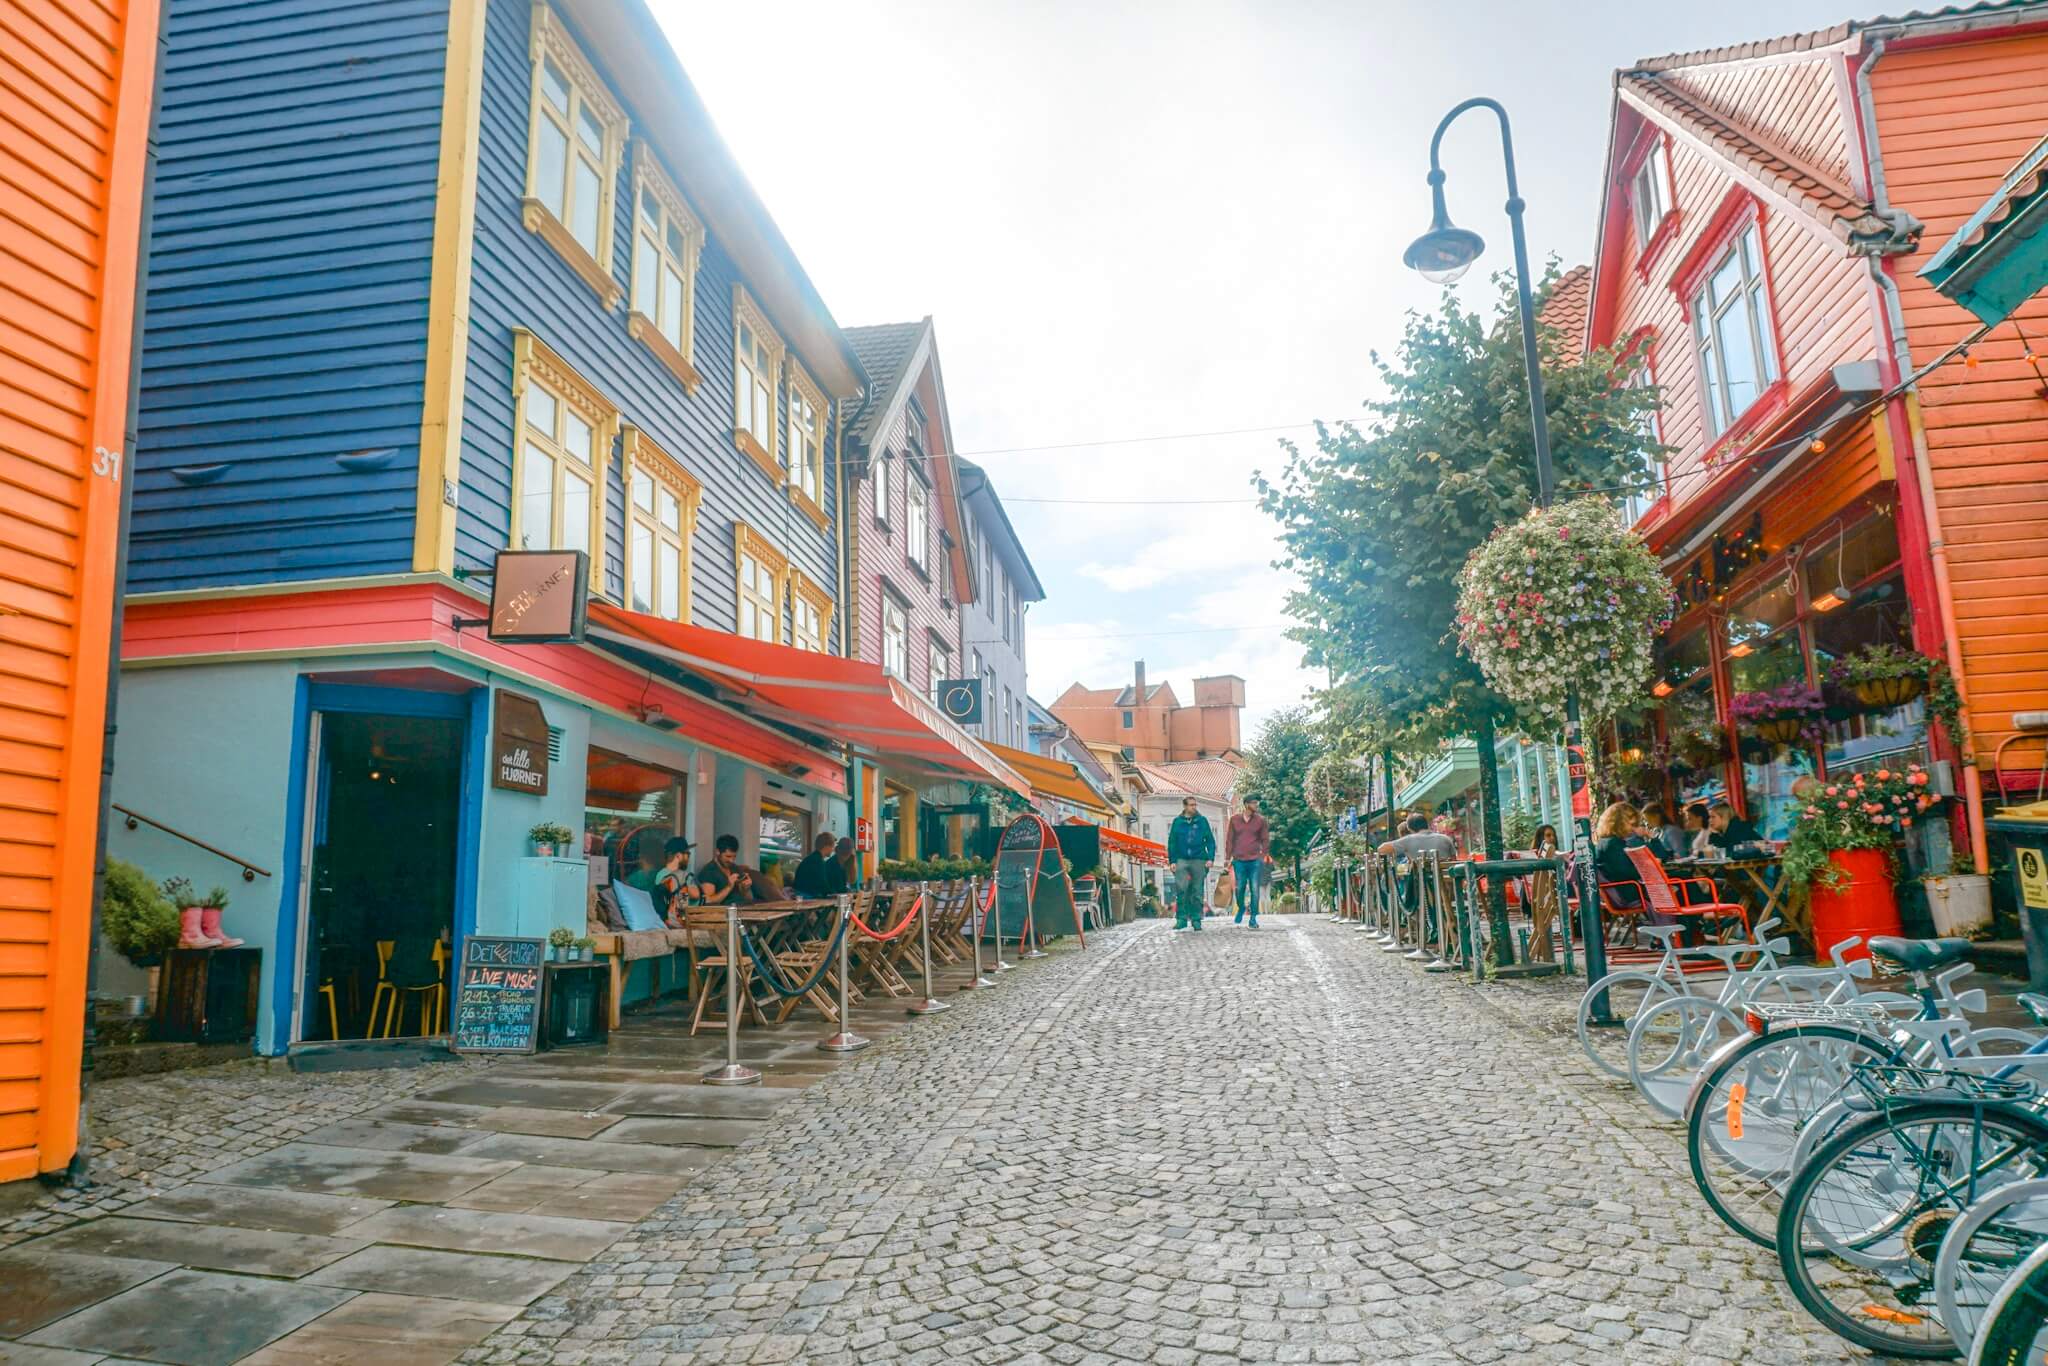 Les rues colorées de stavanger norvège